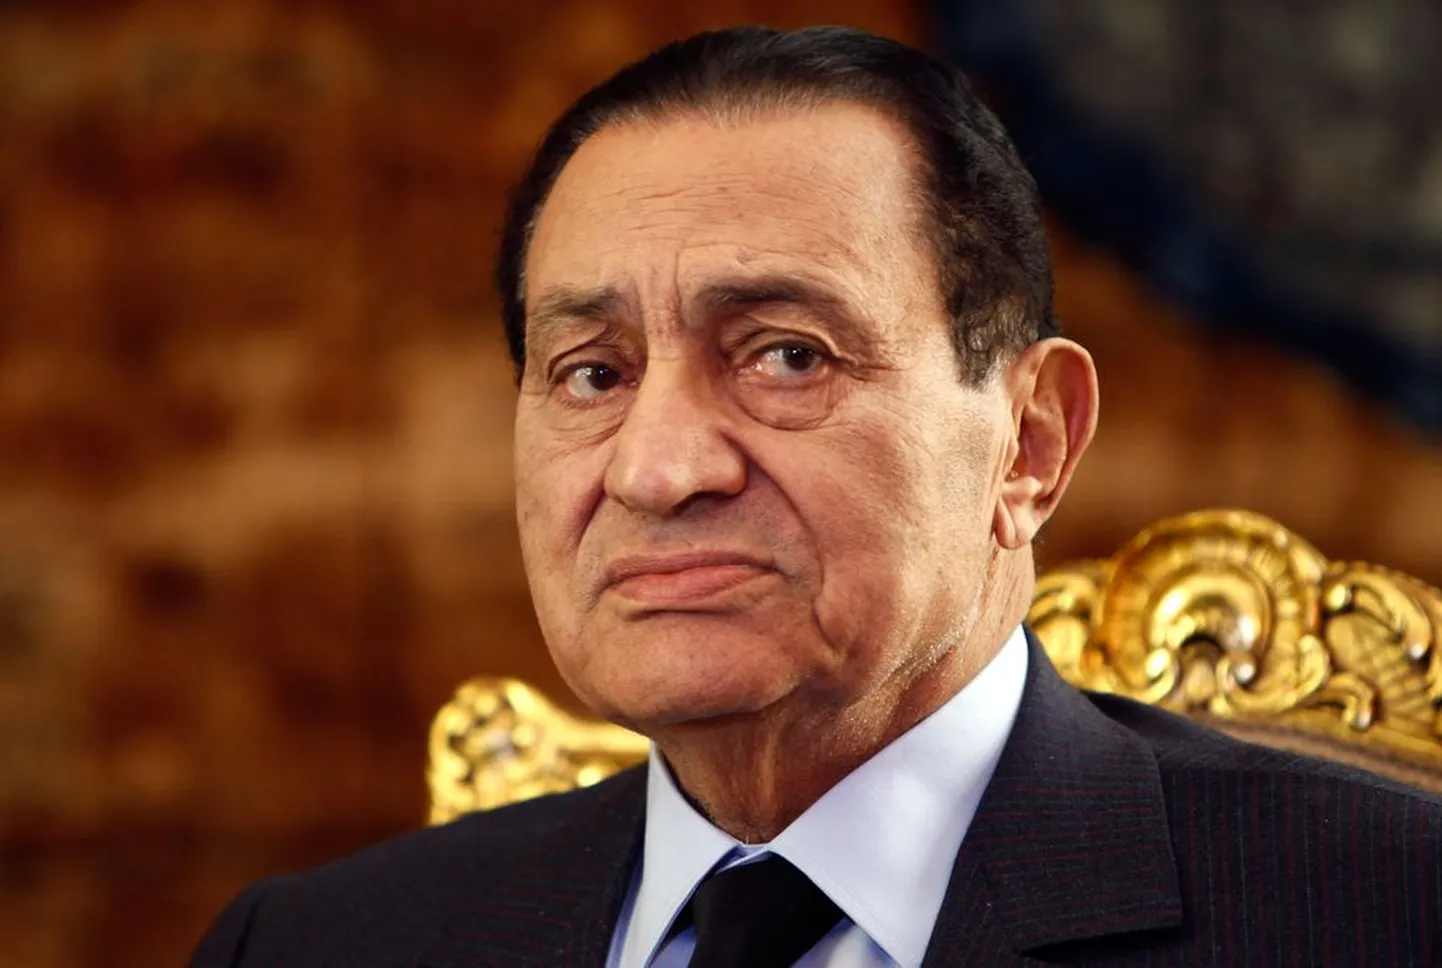 Хосни Мубарак